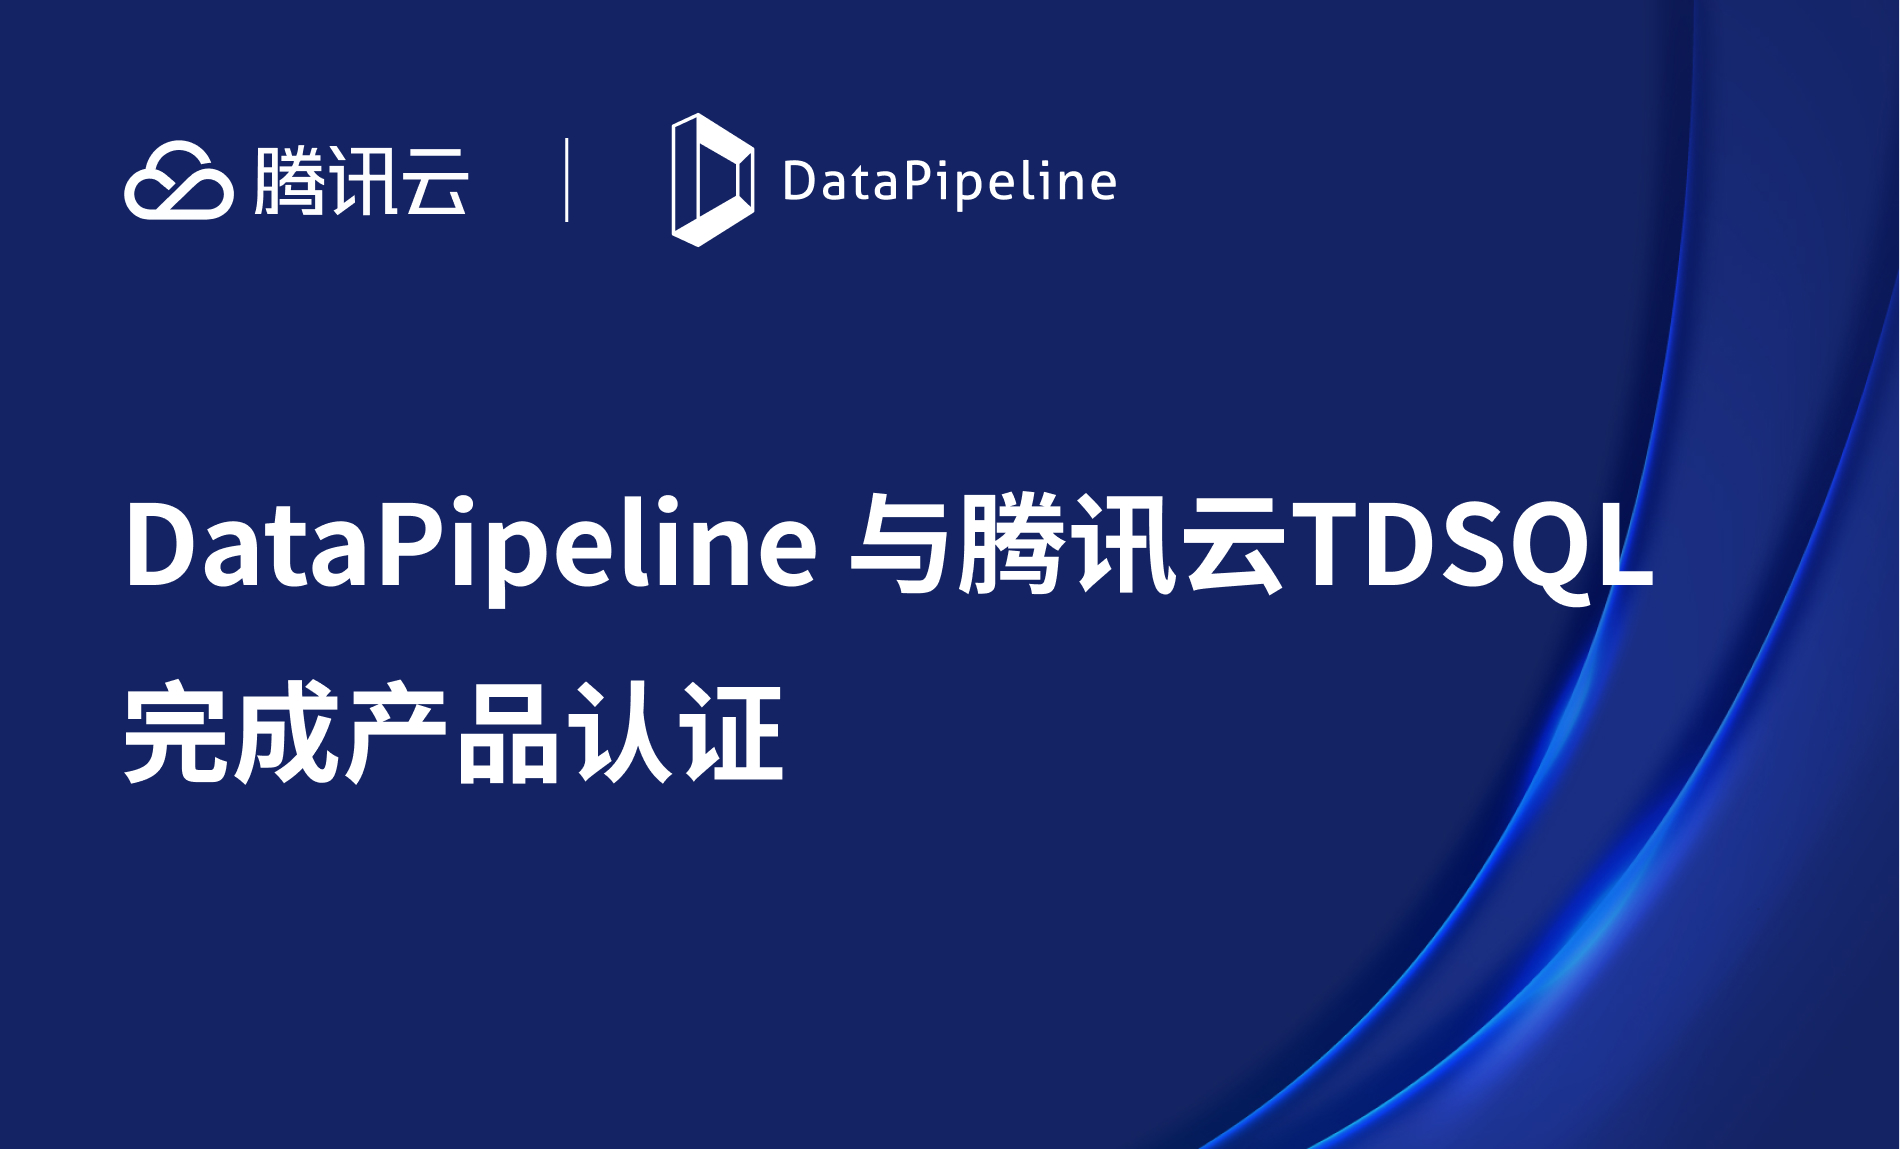 DataPipeline与腾讯云数据库TDSQL完成产品认证，共同助力企业数字化转型